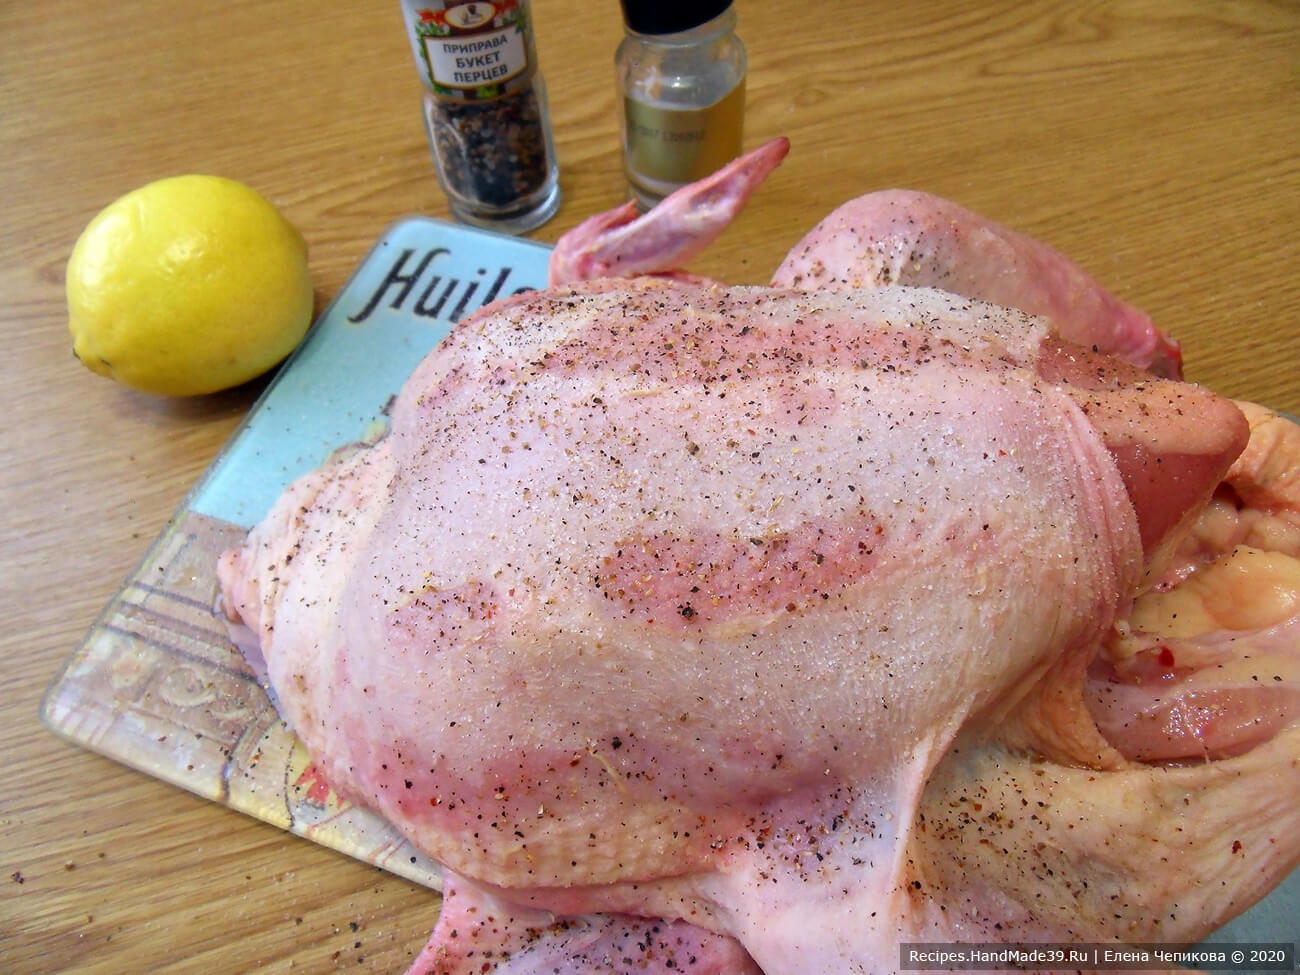 Выпотрошенную тушку курицы промыть, обсушить, натереть солью и перцем